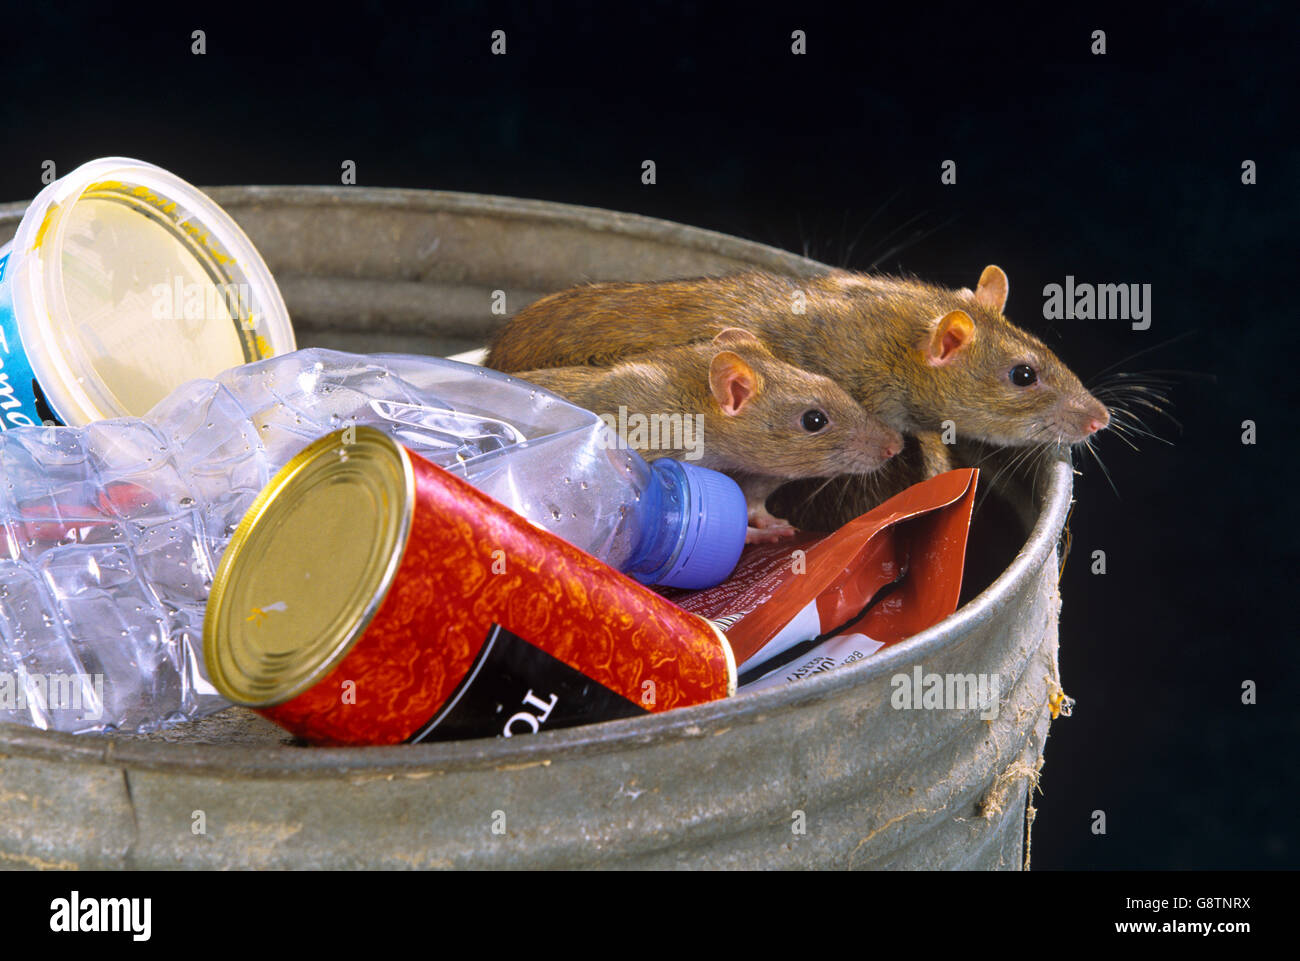 Braune Ratten Rattus norvegicus unter Ausnutzung der verworfenen Essen in der Nähe von Essen, um den Weg in die städtische Umwelt Stockfoto